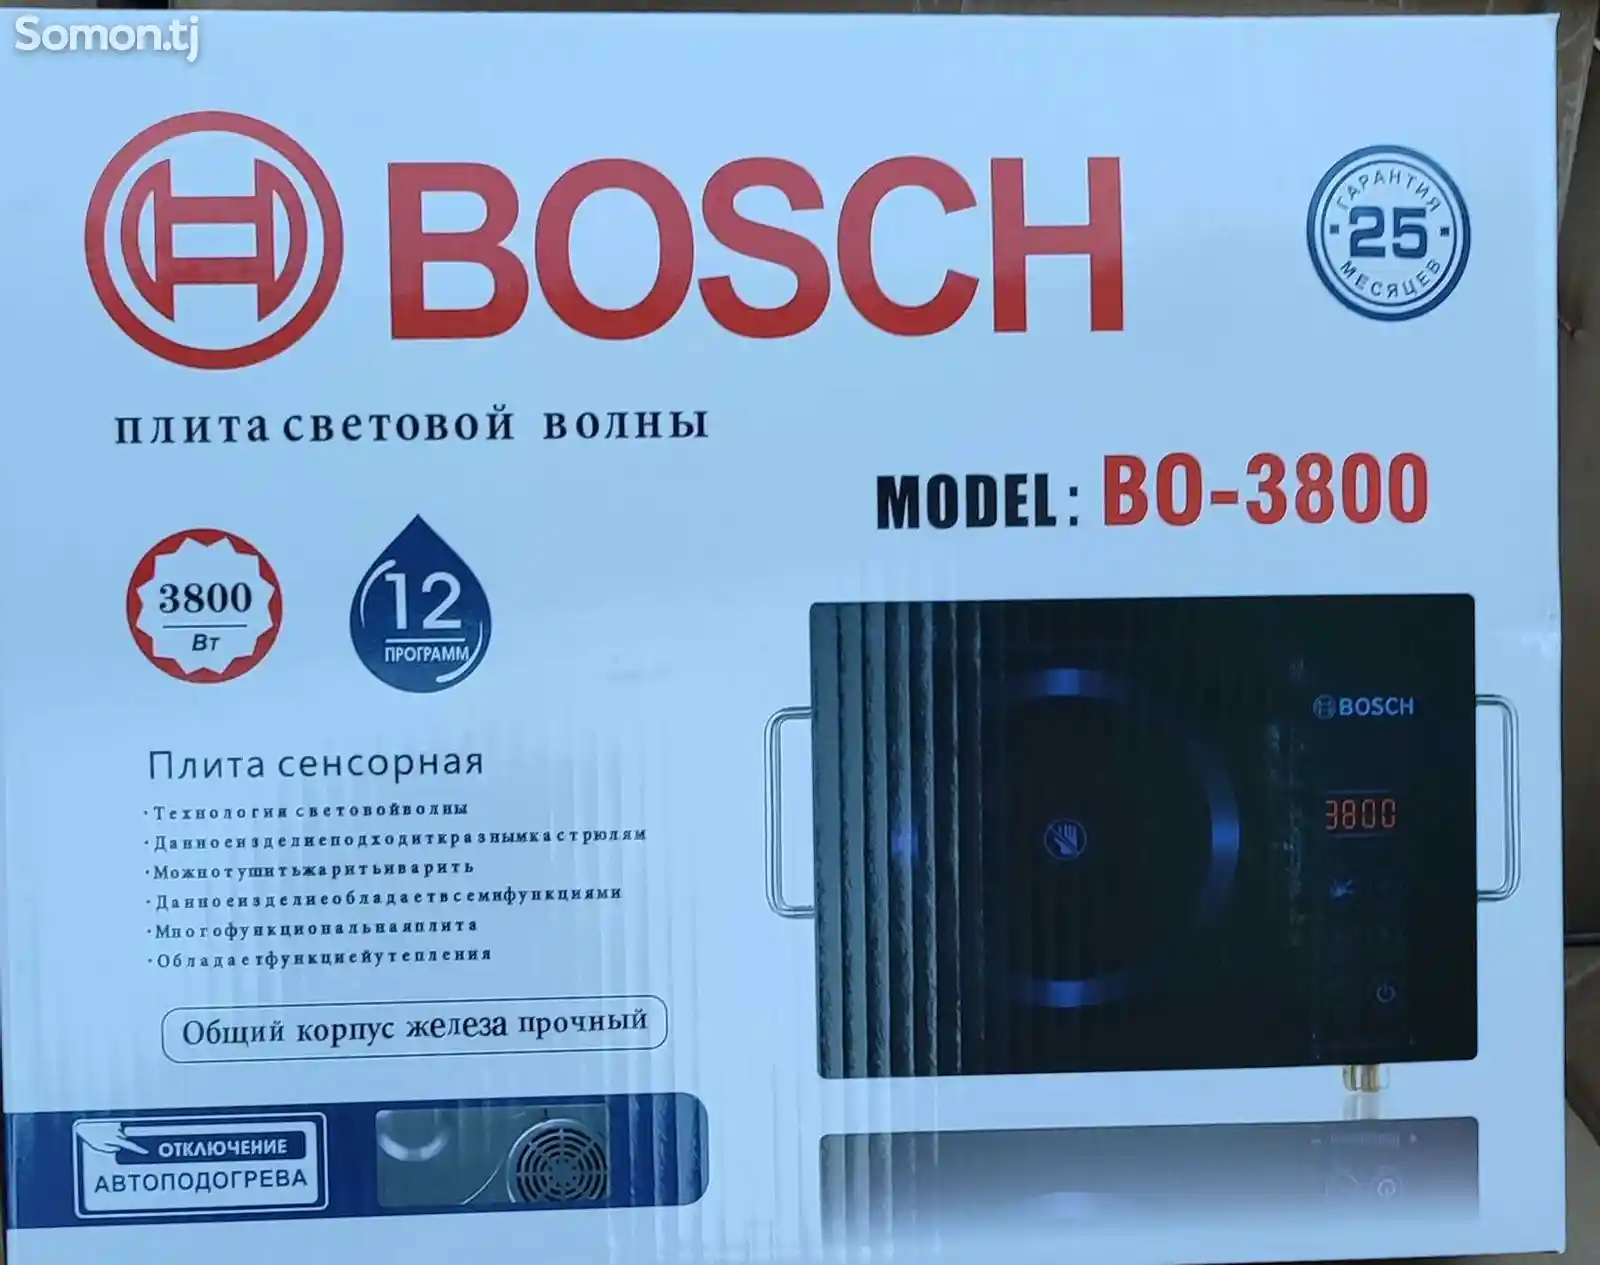 Сенсорная плита Bosch-2